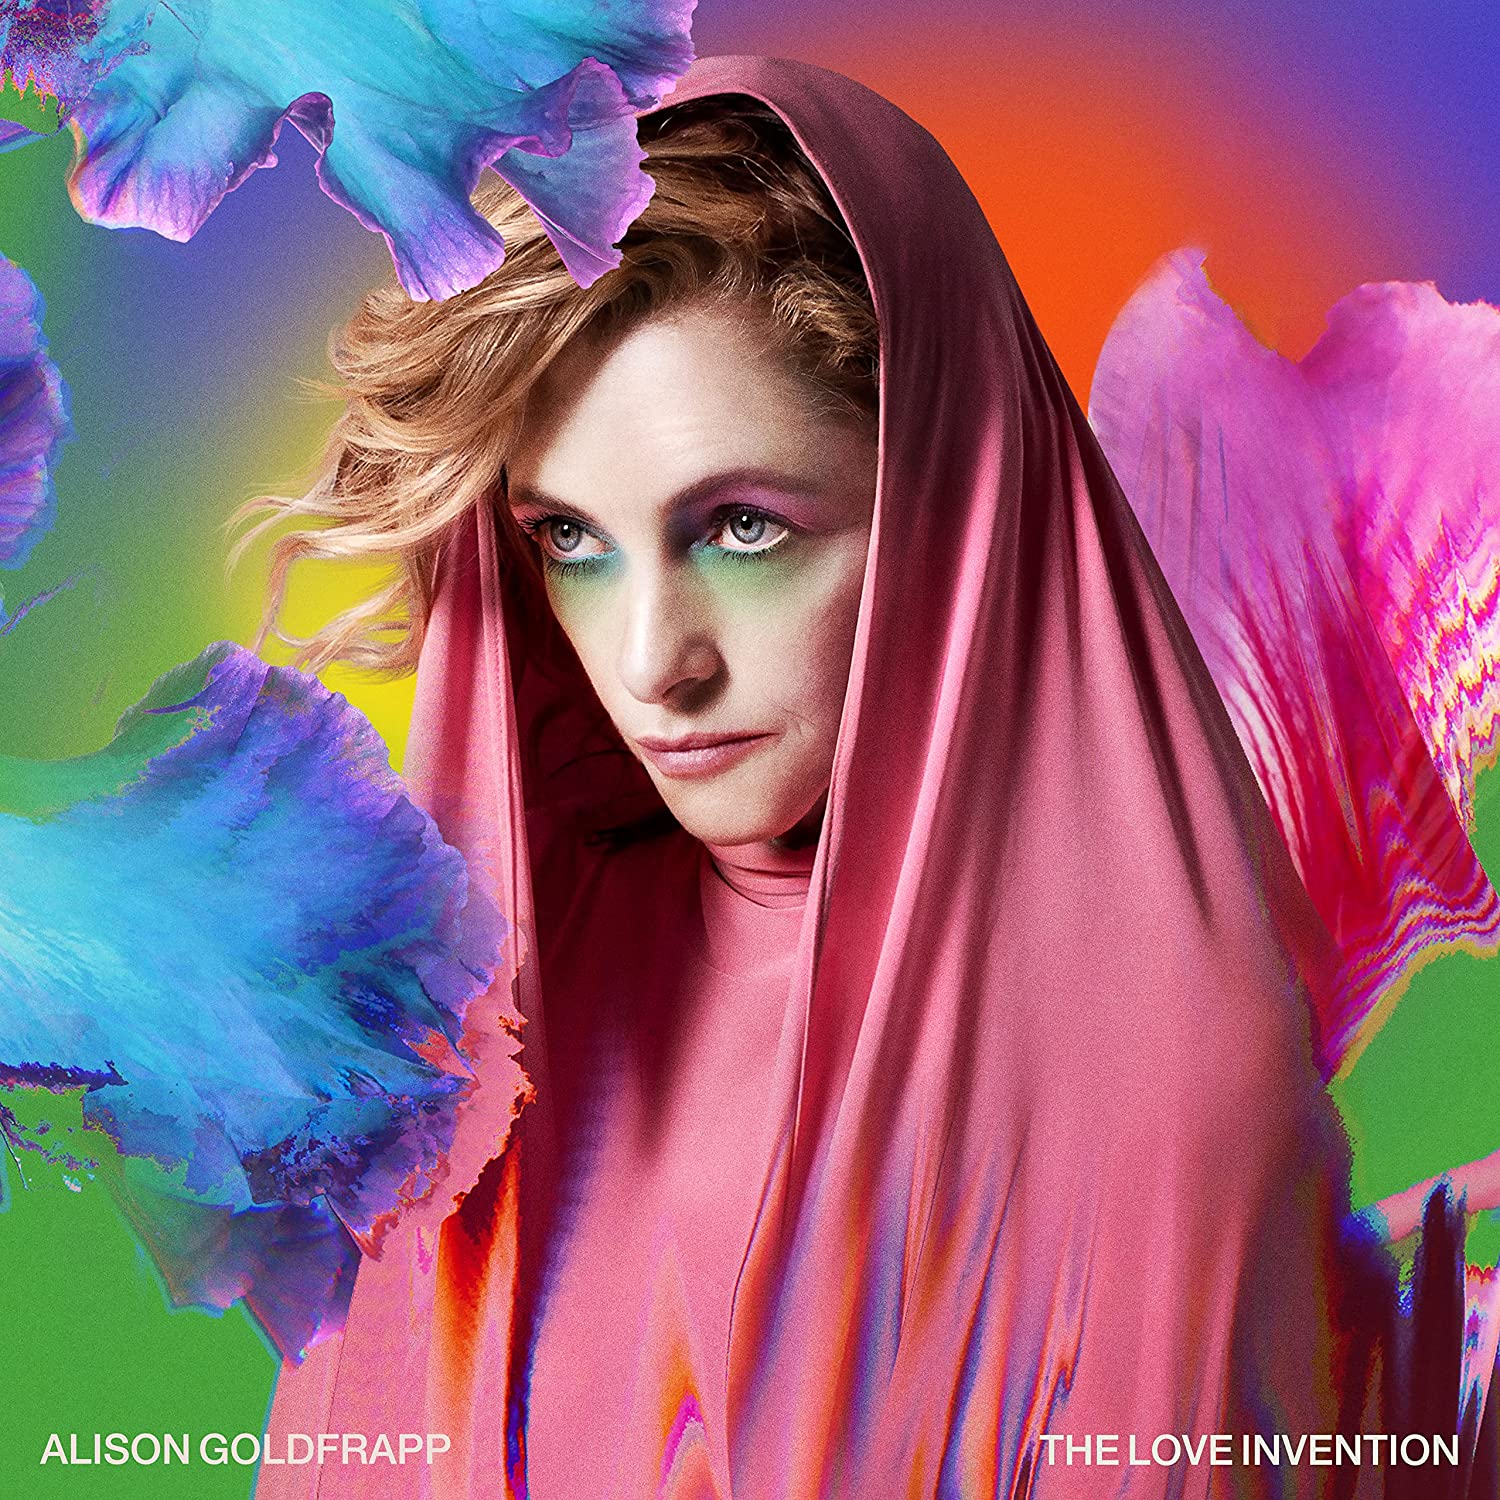 Alison Goldfrapp nuovo album e tour - immagini